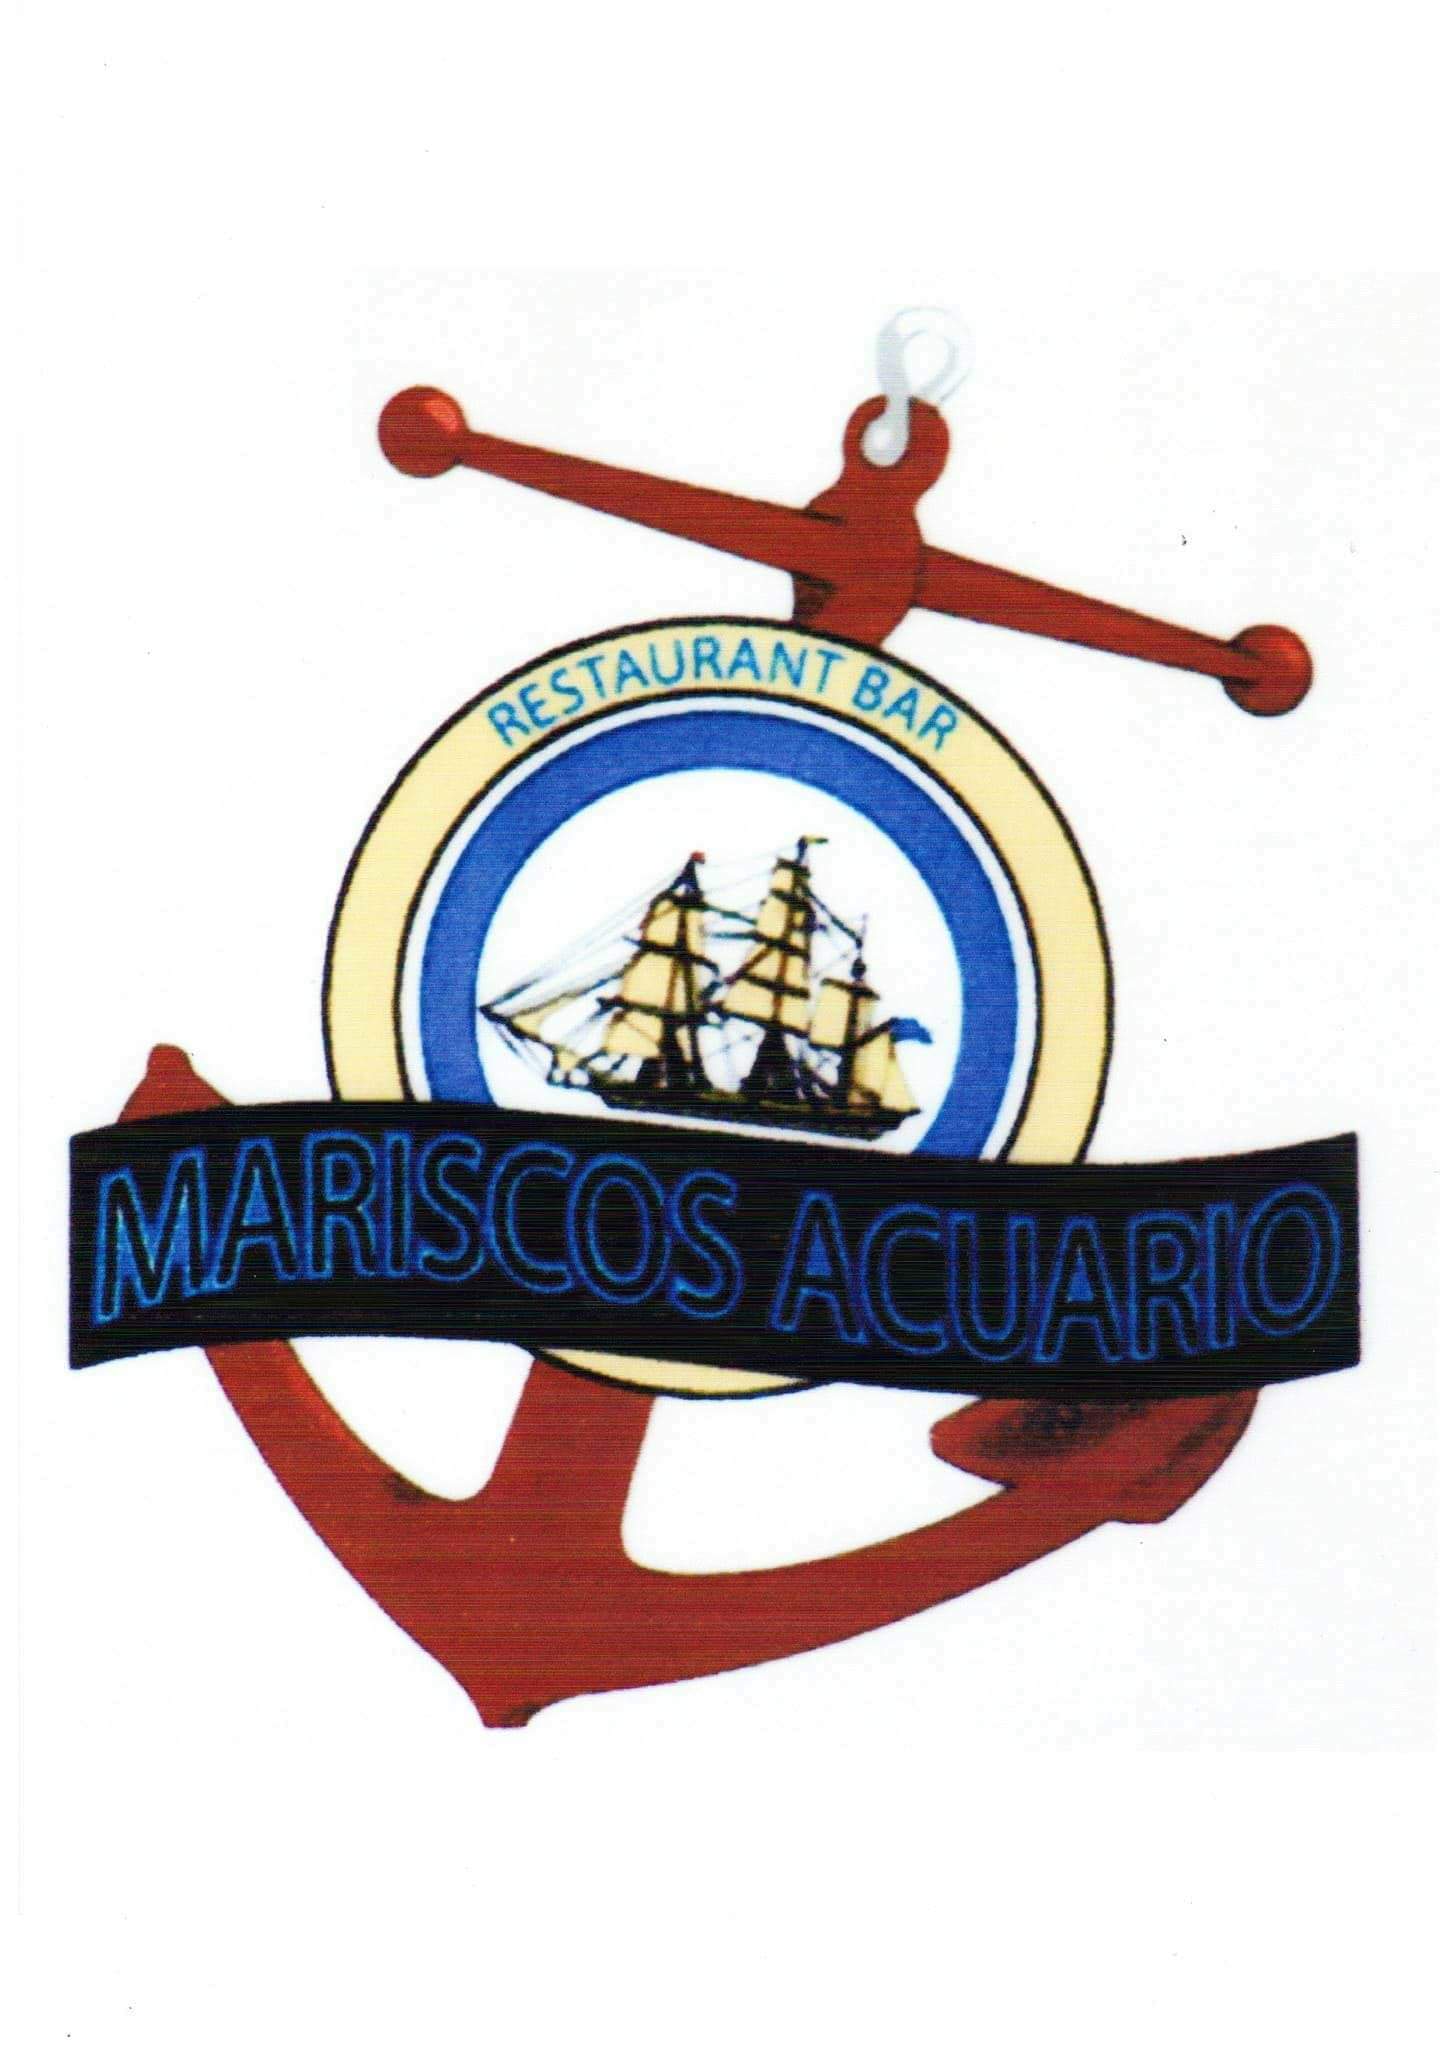 Mariscos Acuario